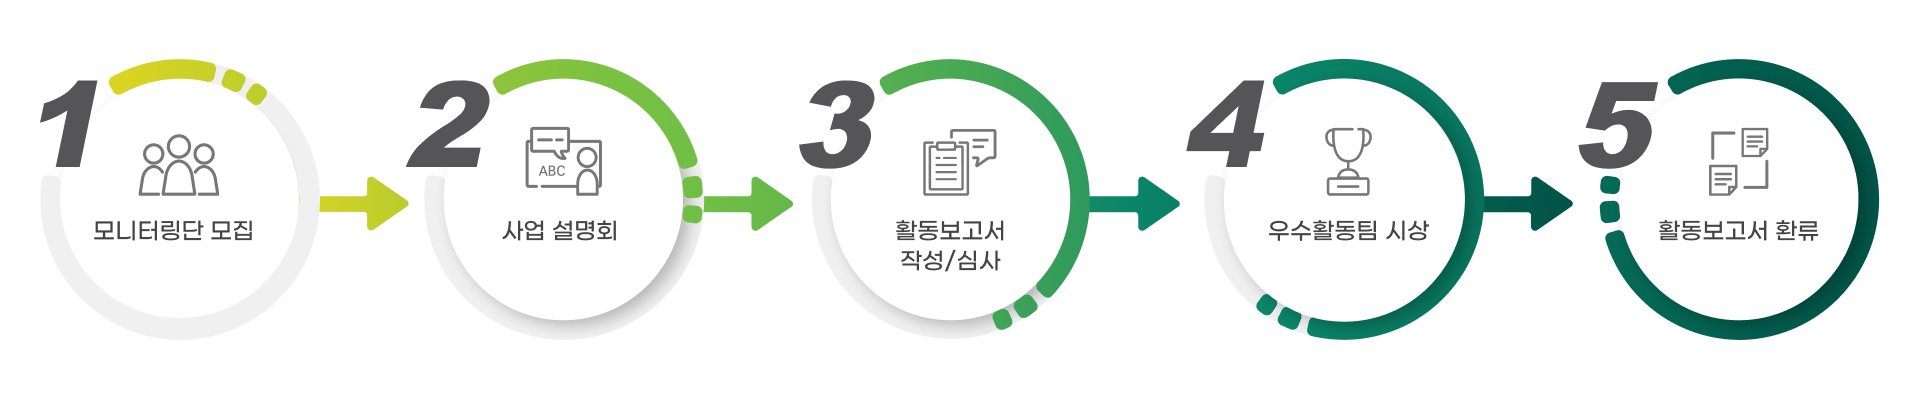 DU 전공교육과정 모니터링단 추진 흐름표